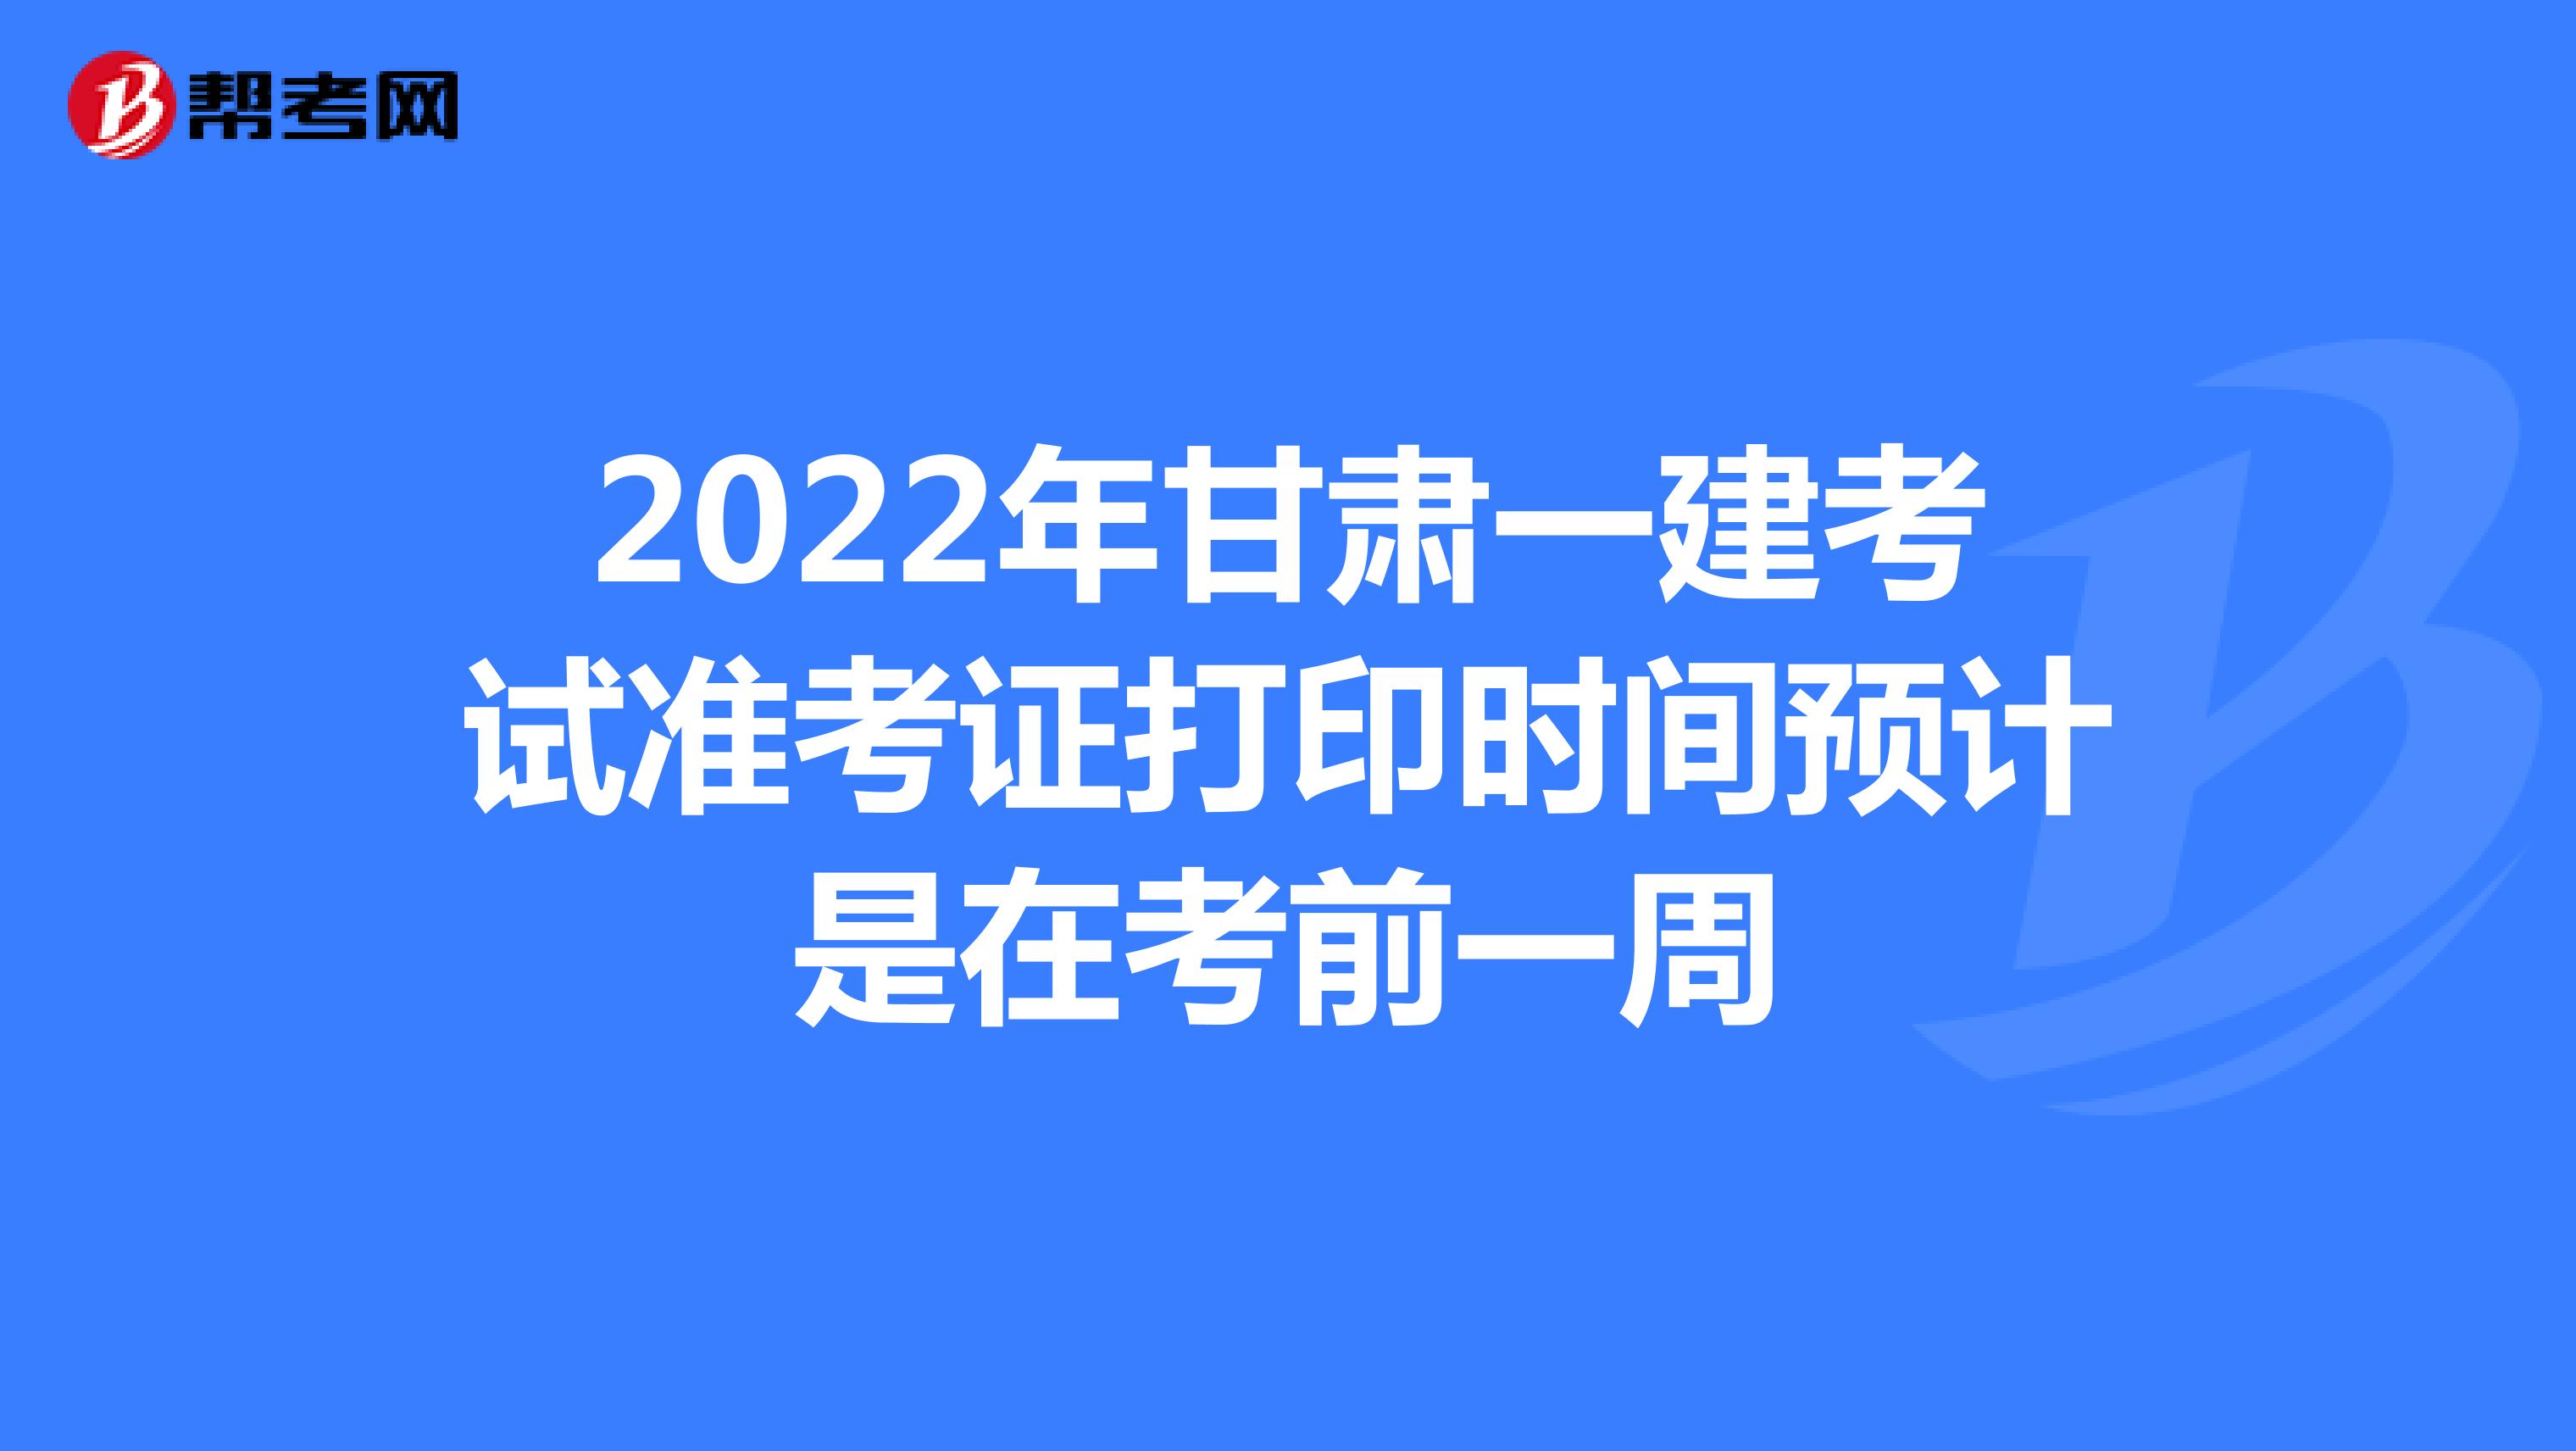 2022年甘肃一建考试准考证打印时间预计是在考前一周